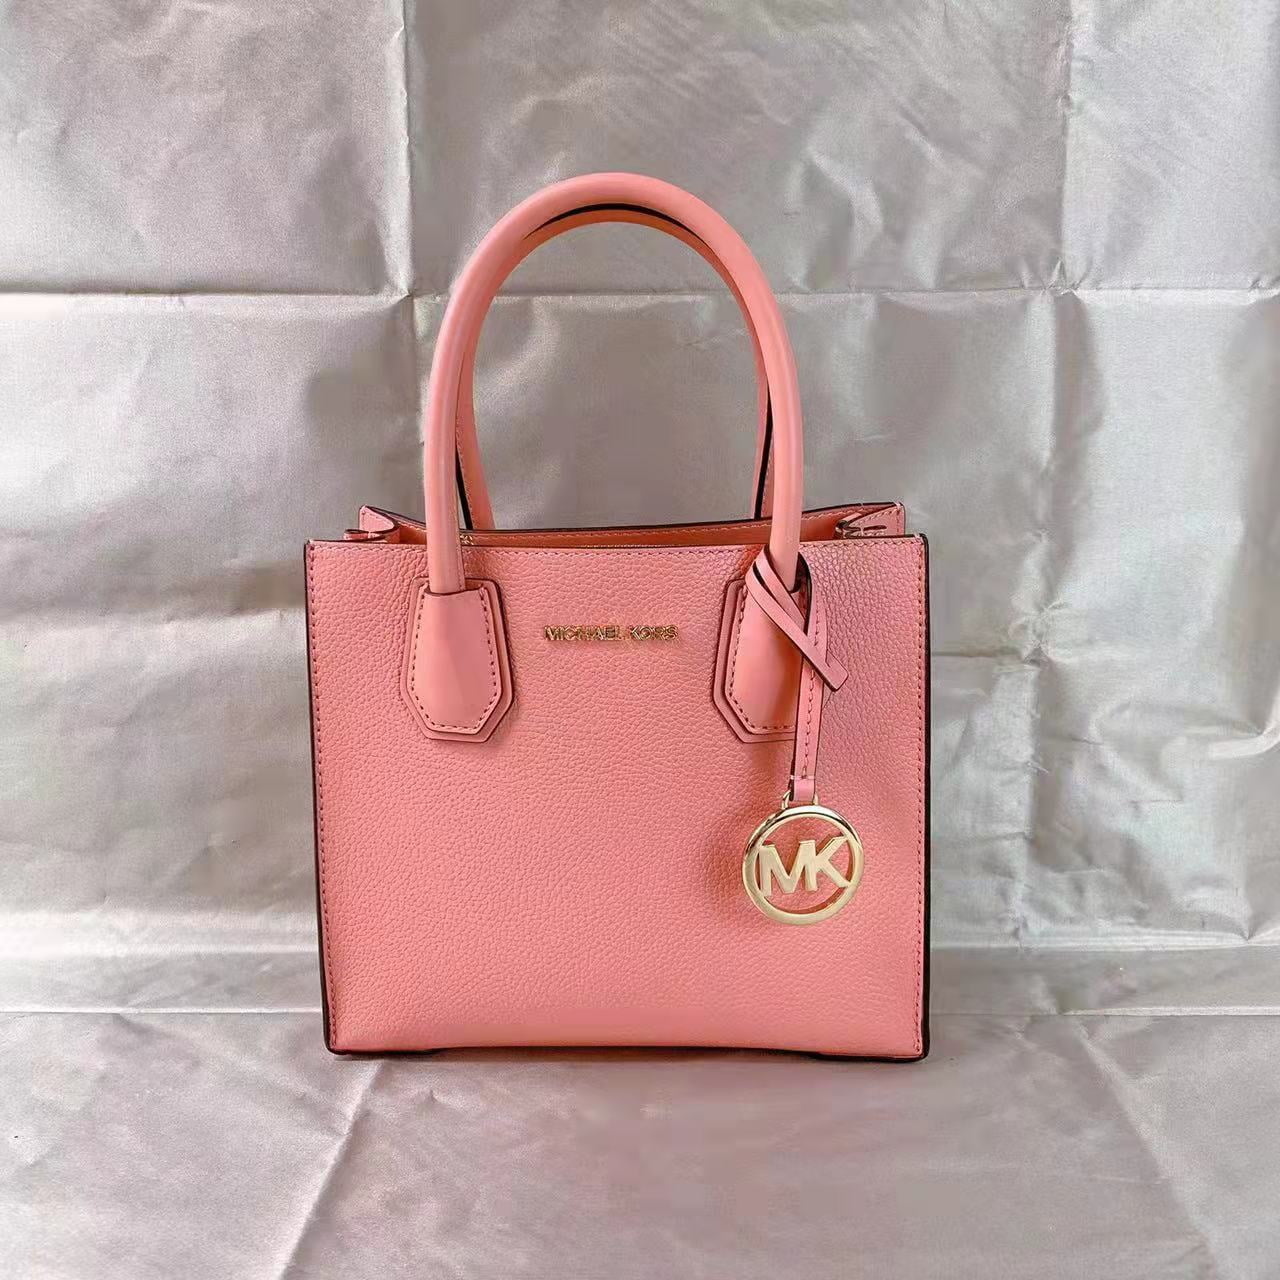 Michael Kors Mercer Medium in Blush Pink, Women's Fashion, Bags